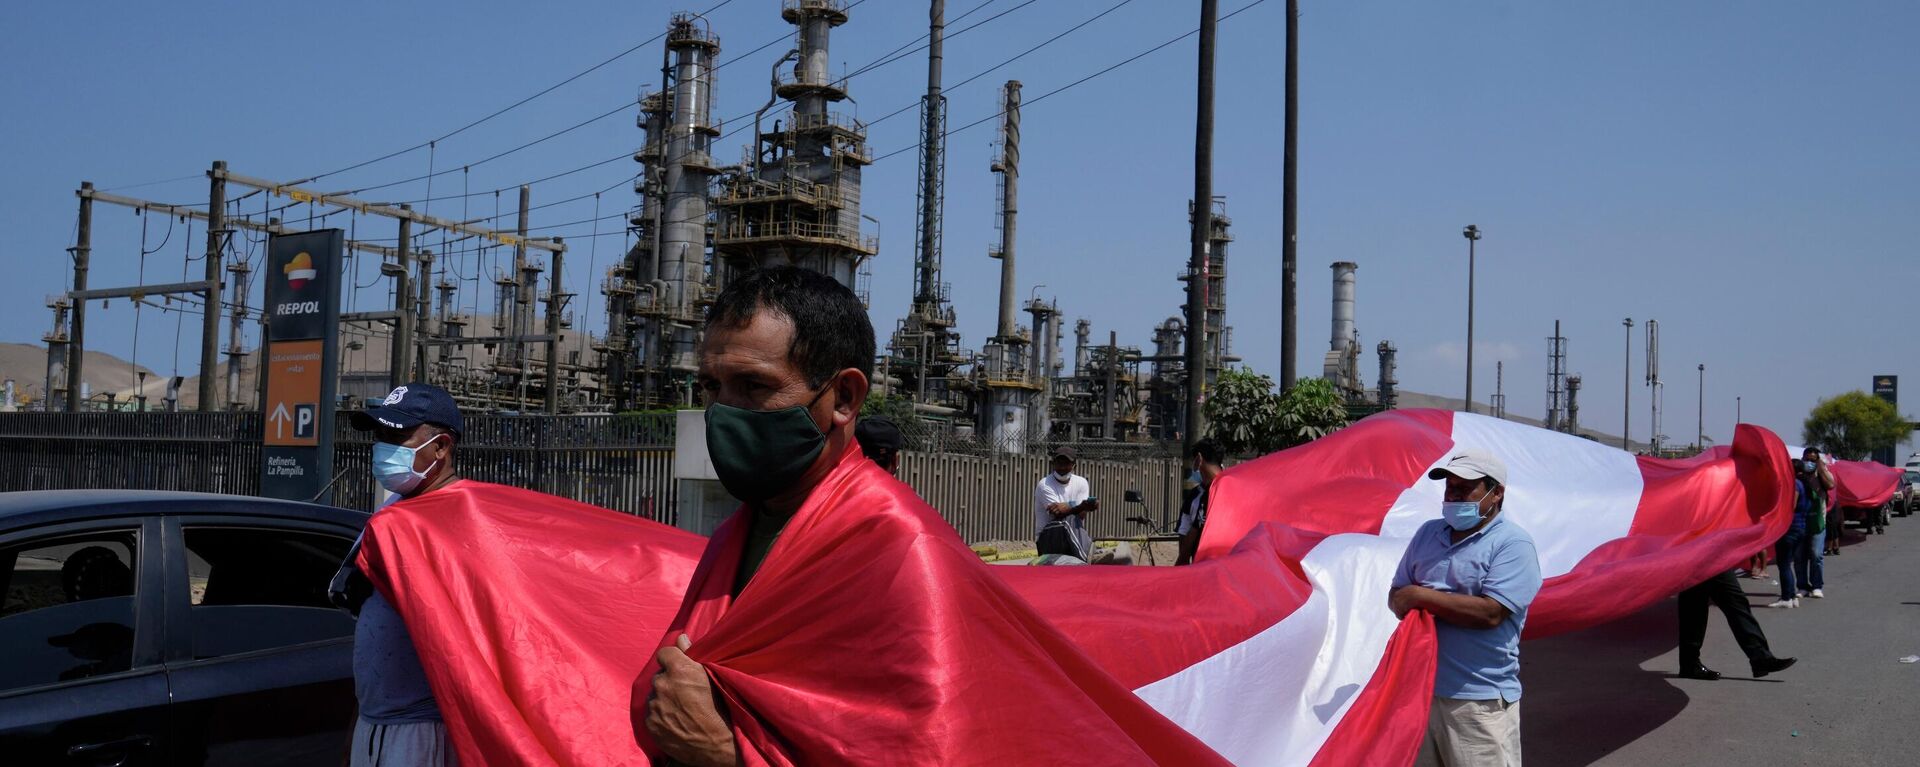 Pescadores peruanos protestan fuera de la refinería de La Pampilla tras el derrame de petróleo ocurrido en enero de 2022 - Sputnik Mundo, 1920, 19.01.2022